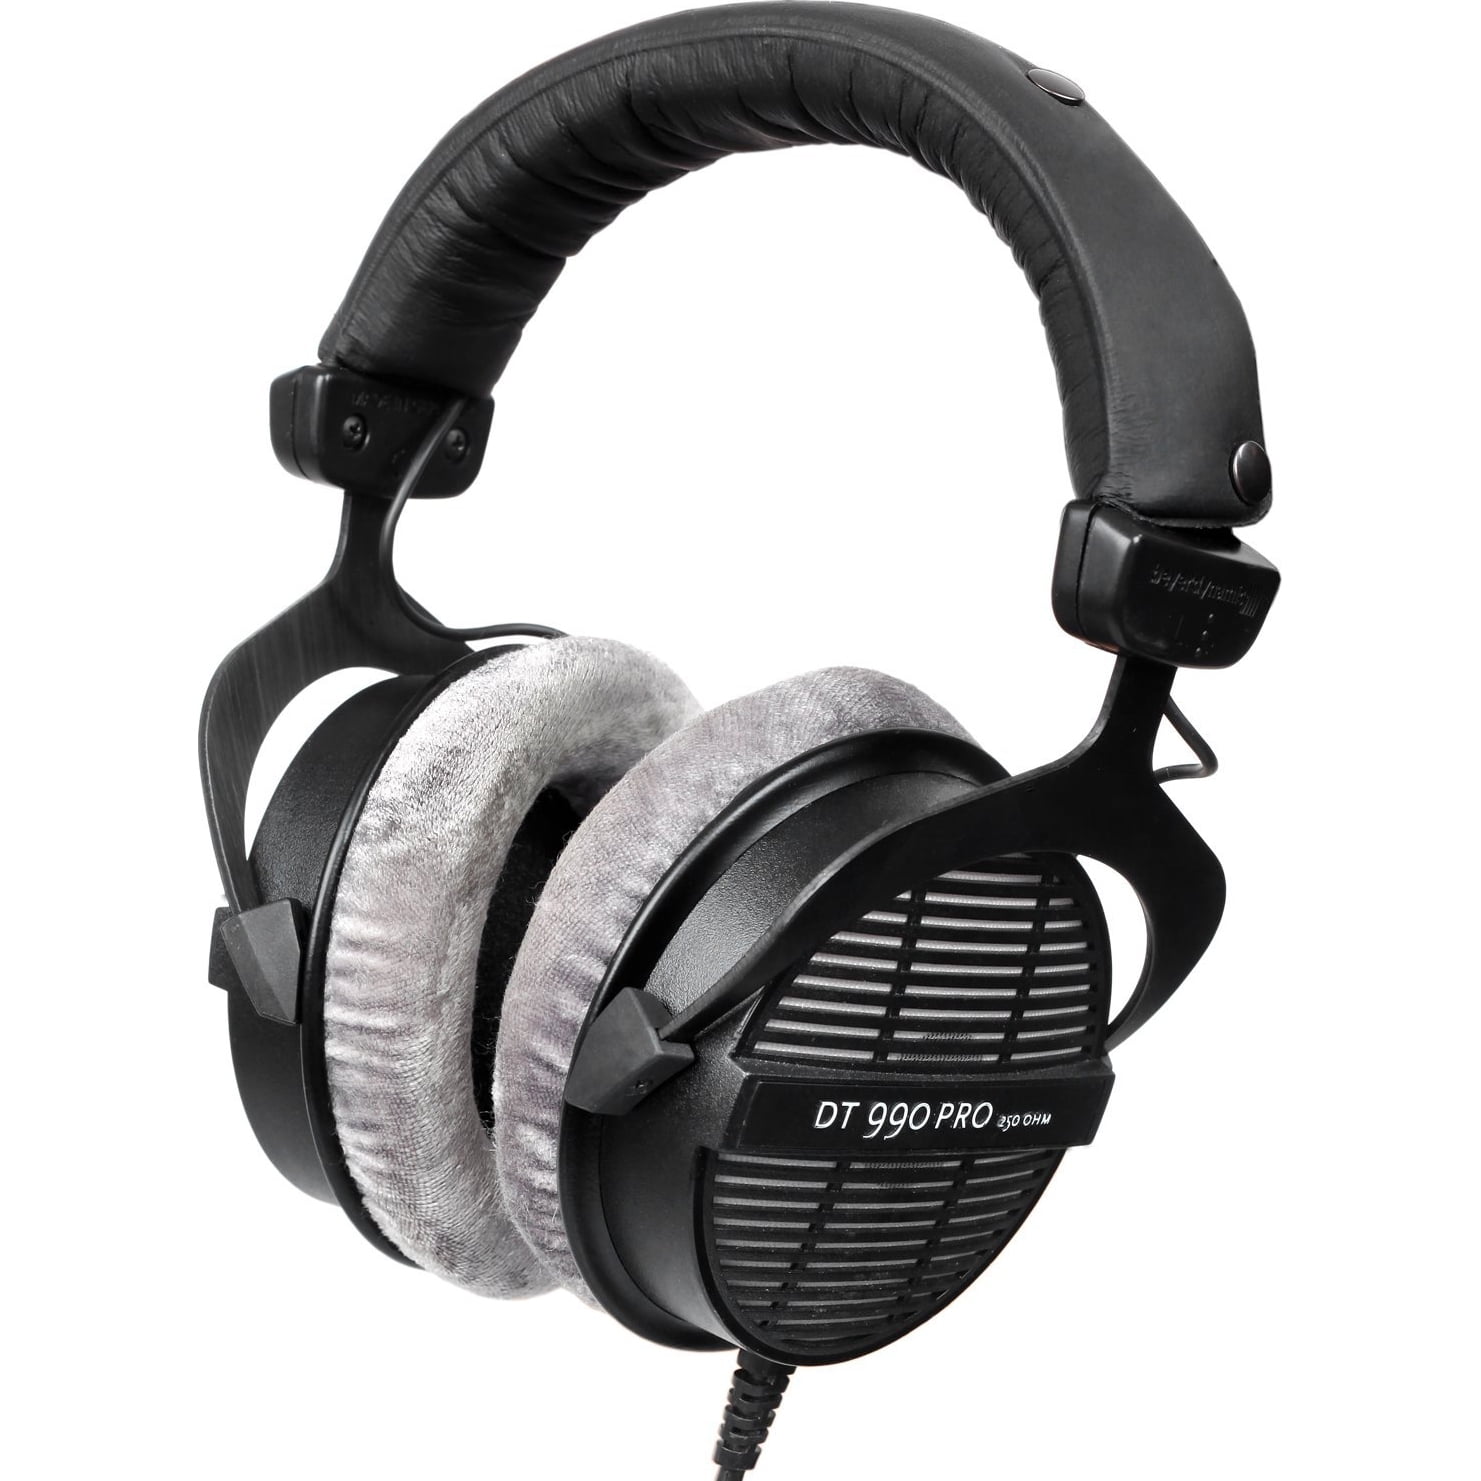 Beyerdynamic DT 990 Pro 250 ohm Over-Ear Studio Open